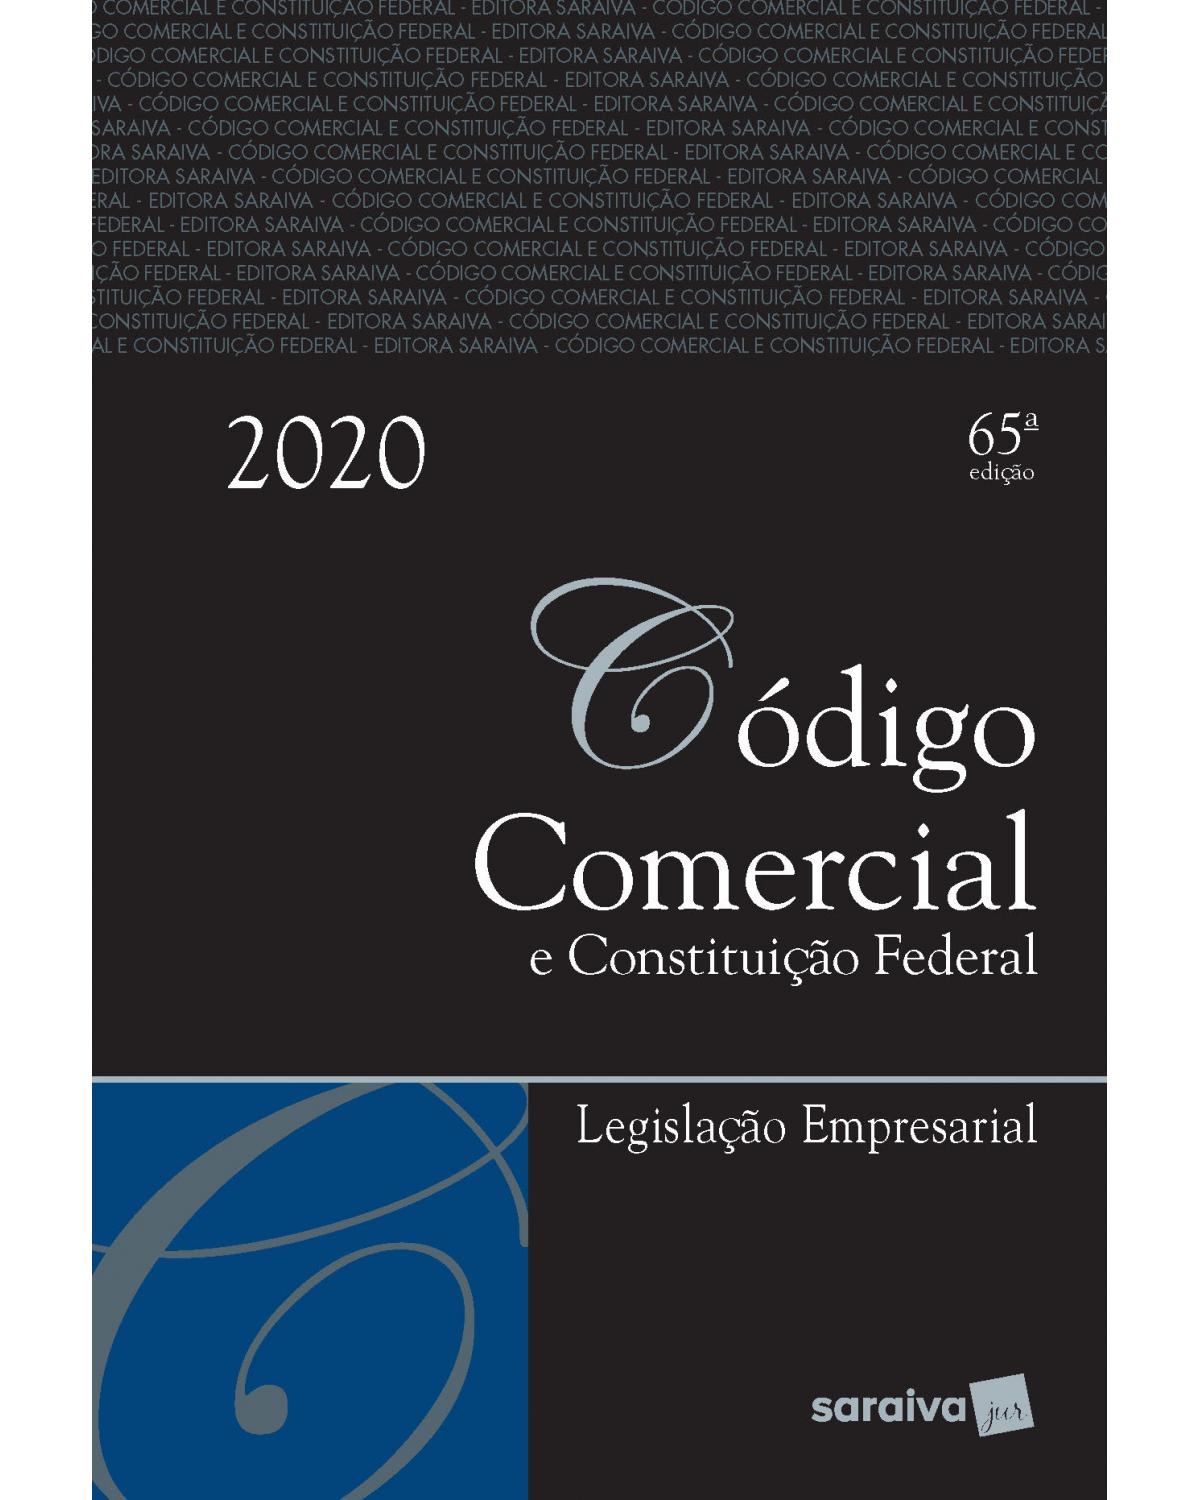 Código comercial e Constituição Federal - legislação empresarial - 65ª Edição | 2020